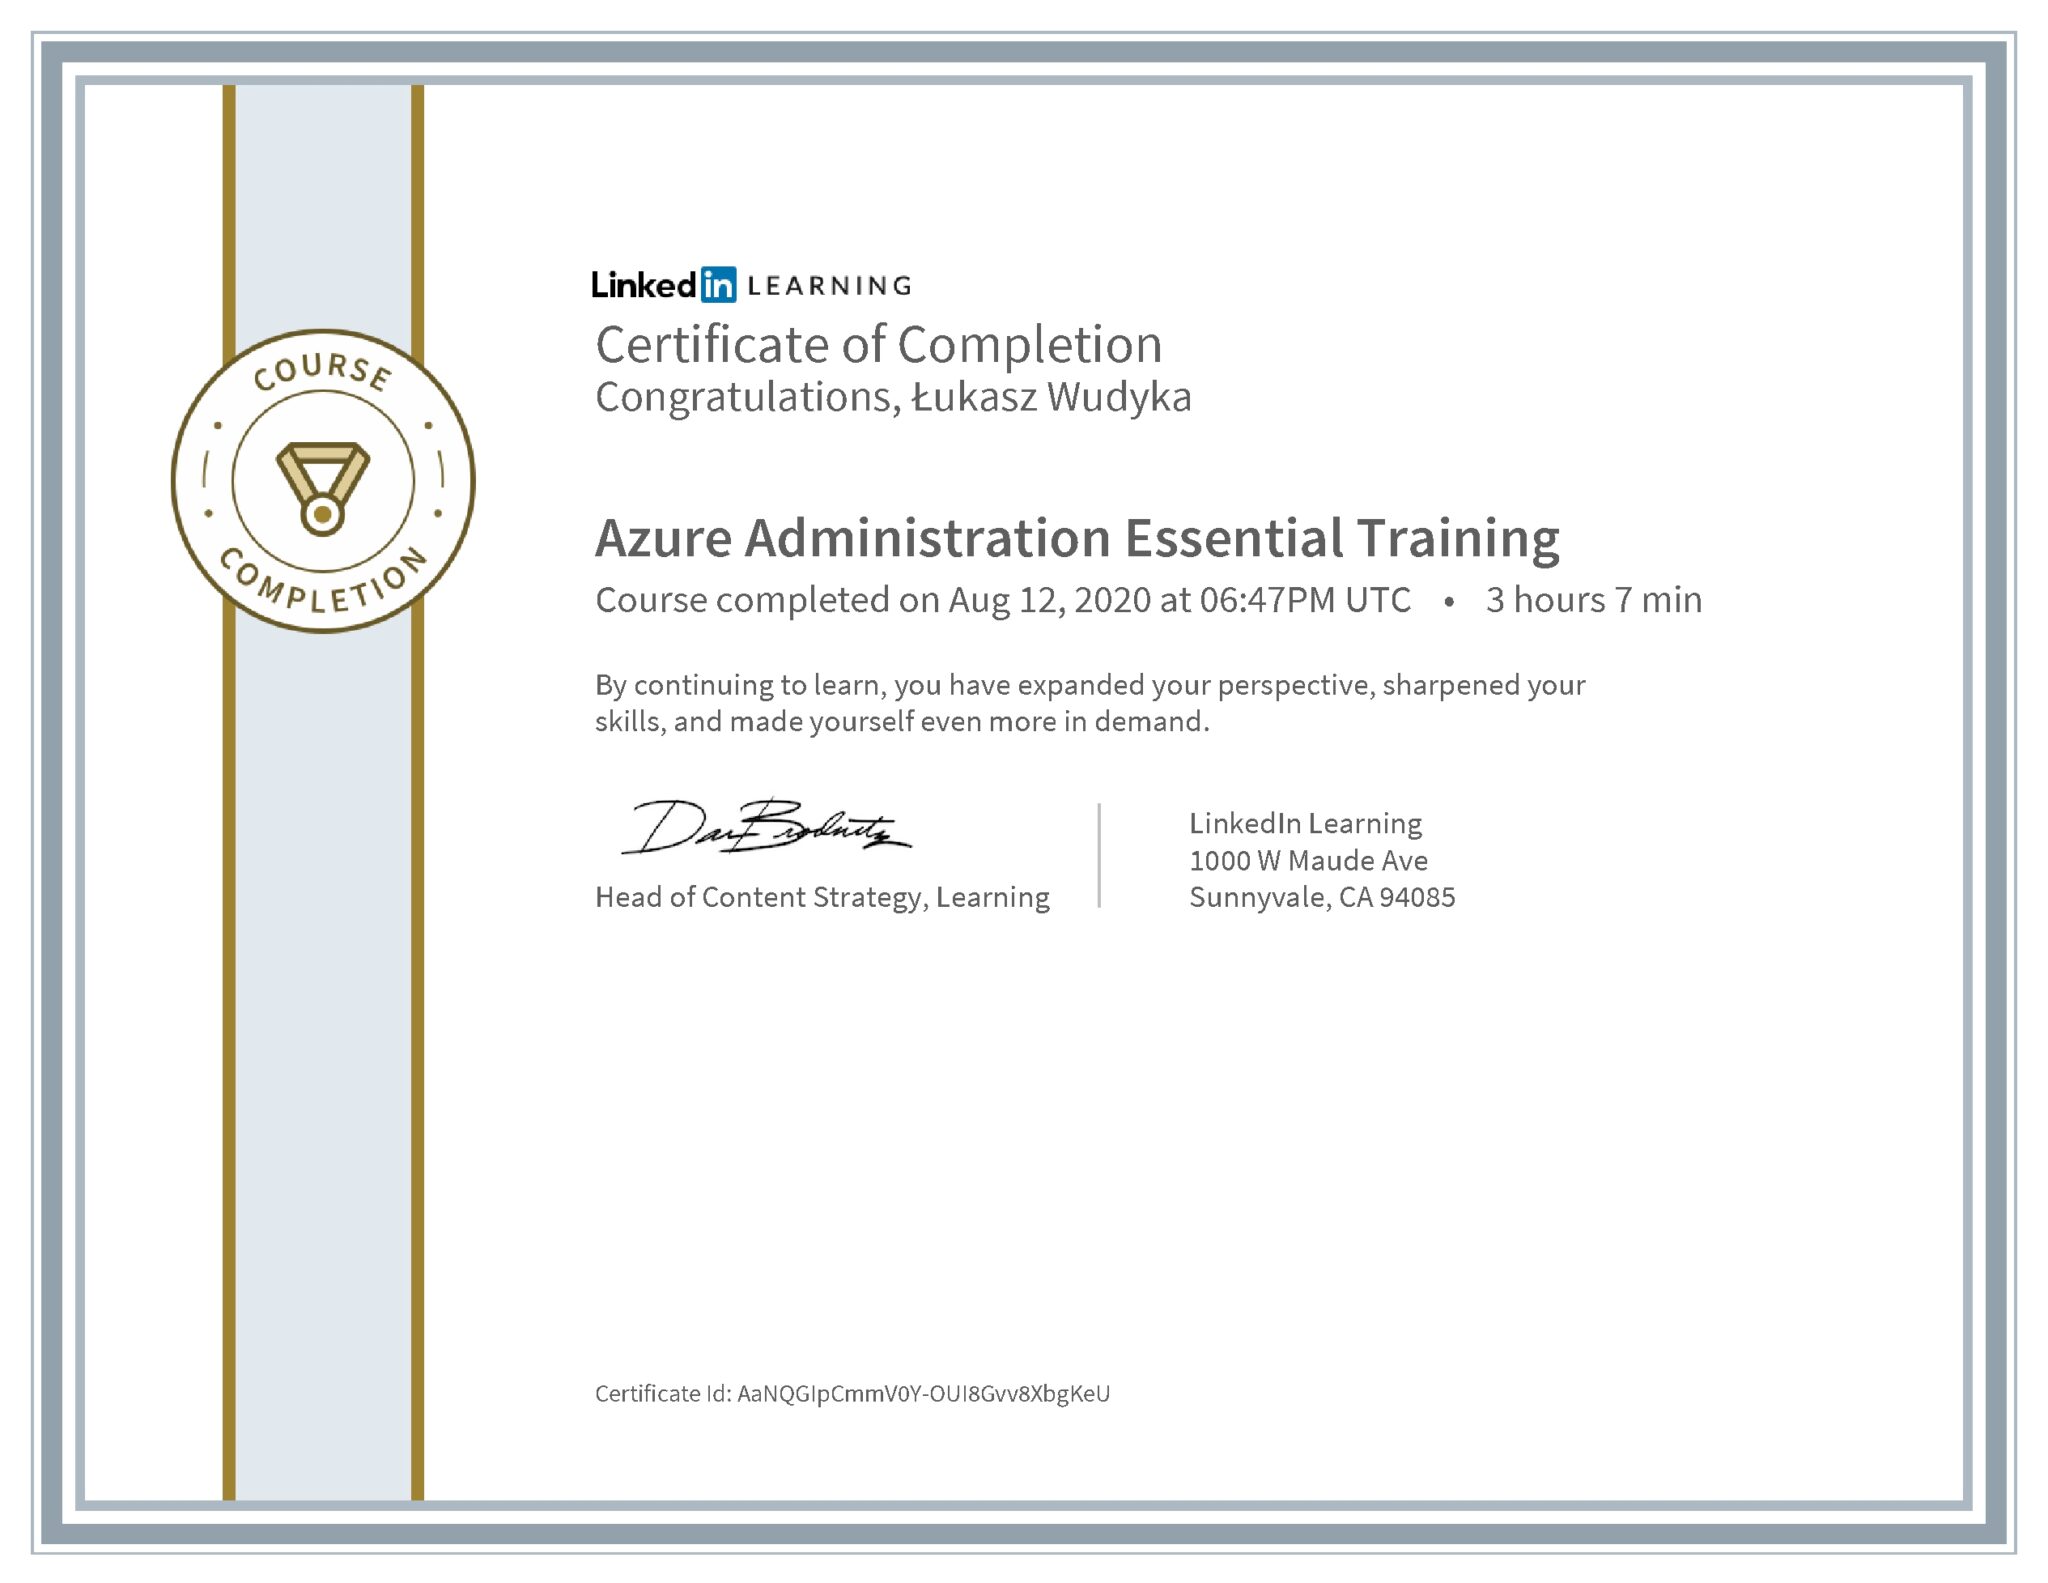 Łukasz Wudyka certyfikat LinkedIn Azure Administration Essential Training